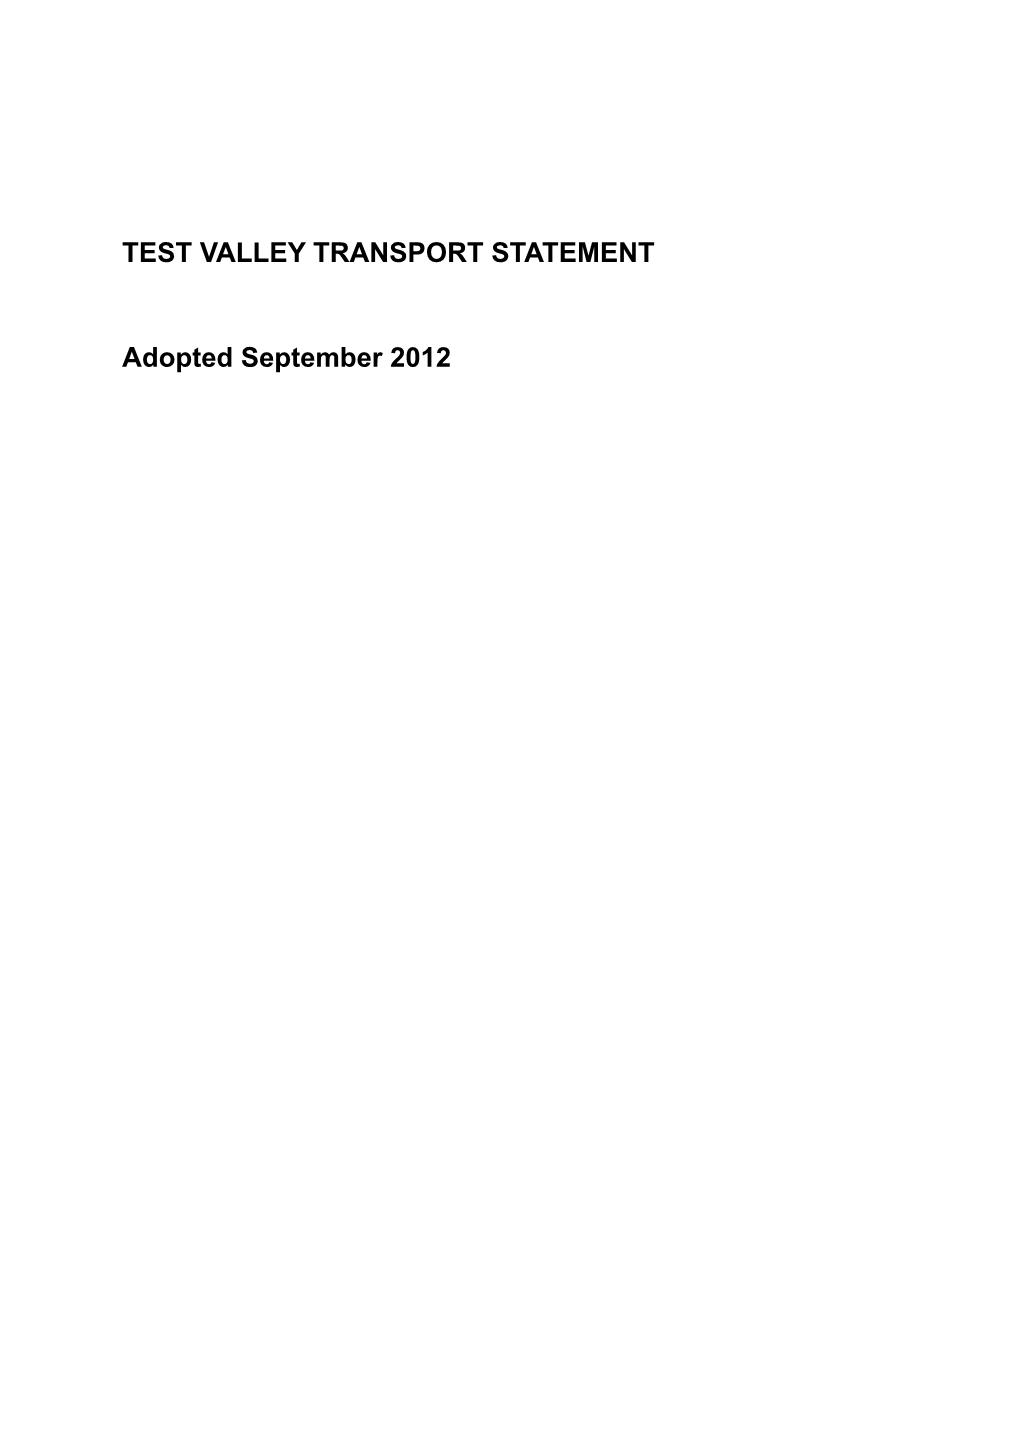 Test Valley District Statement